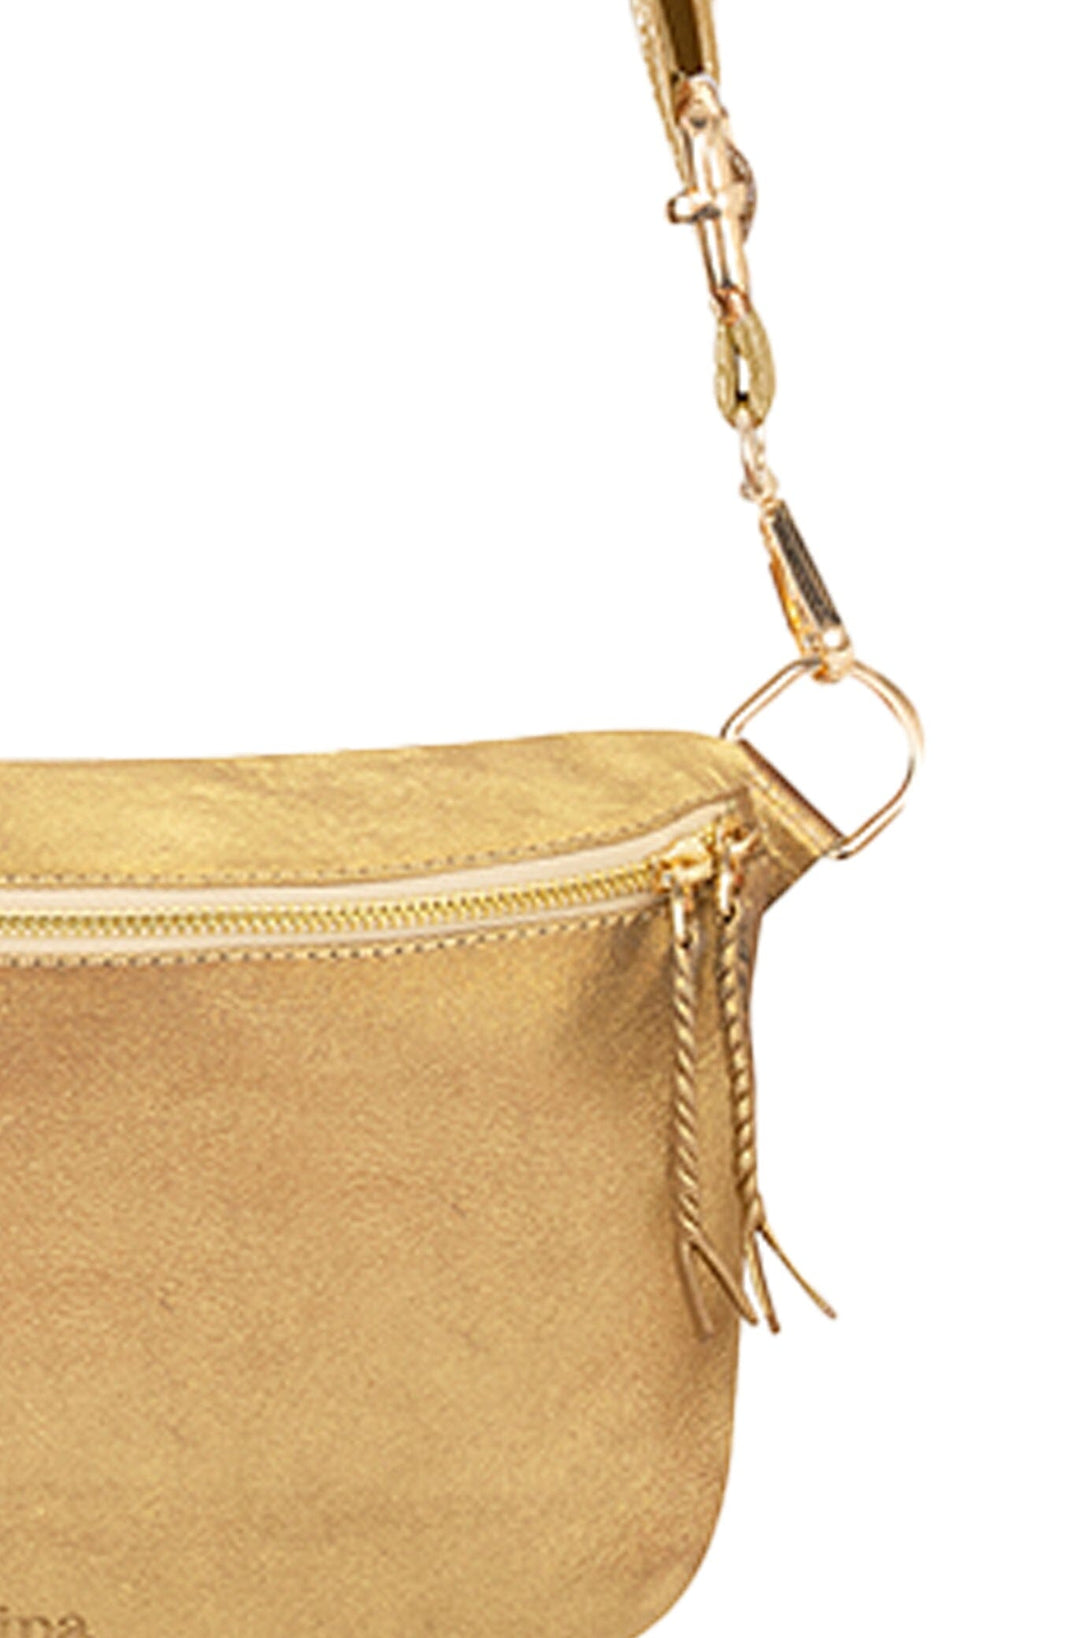 Ramona Leather Handbag Gold Metallic Leather